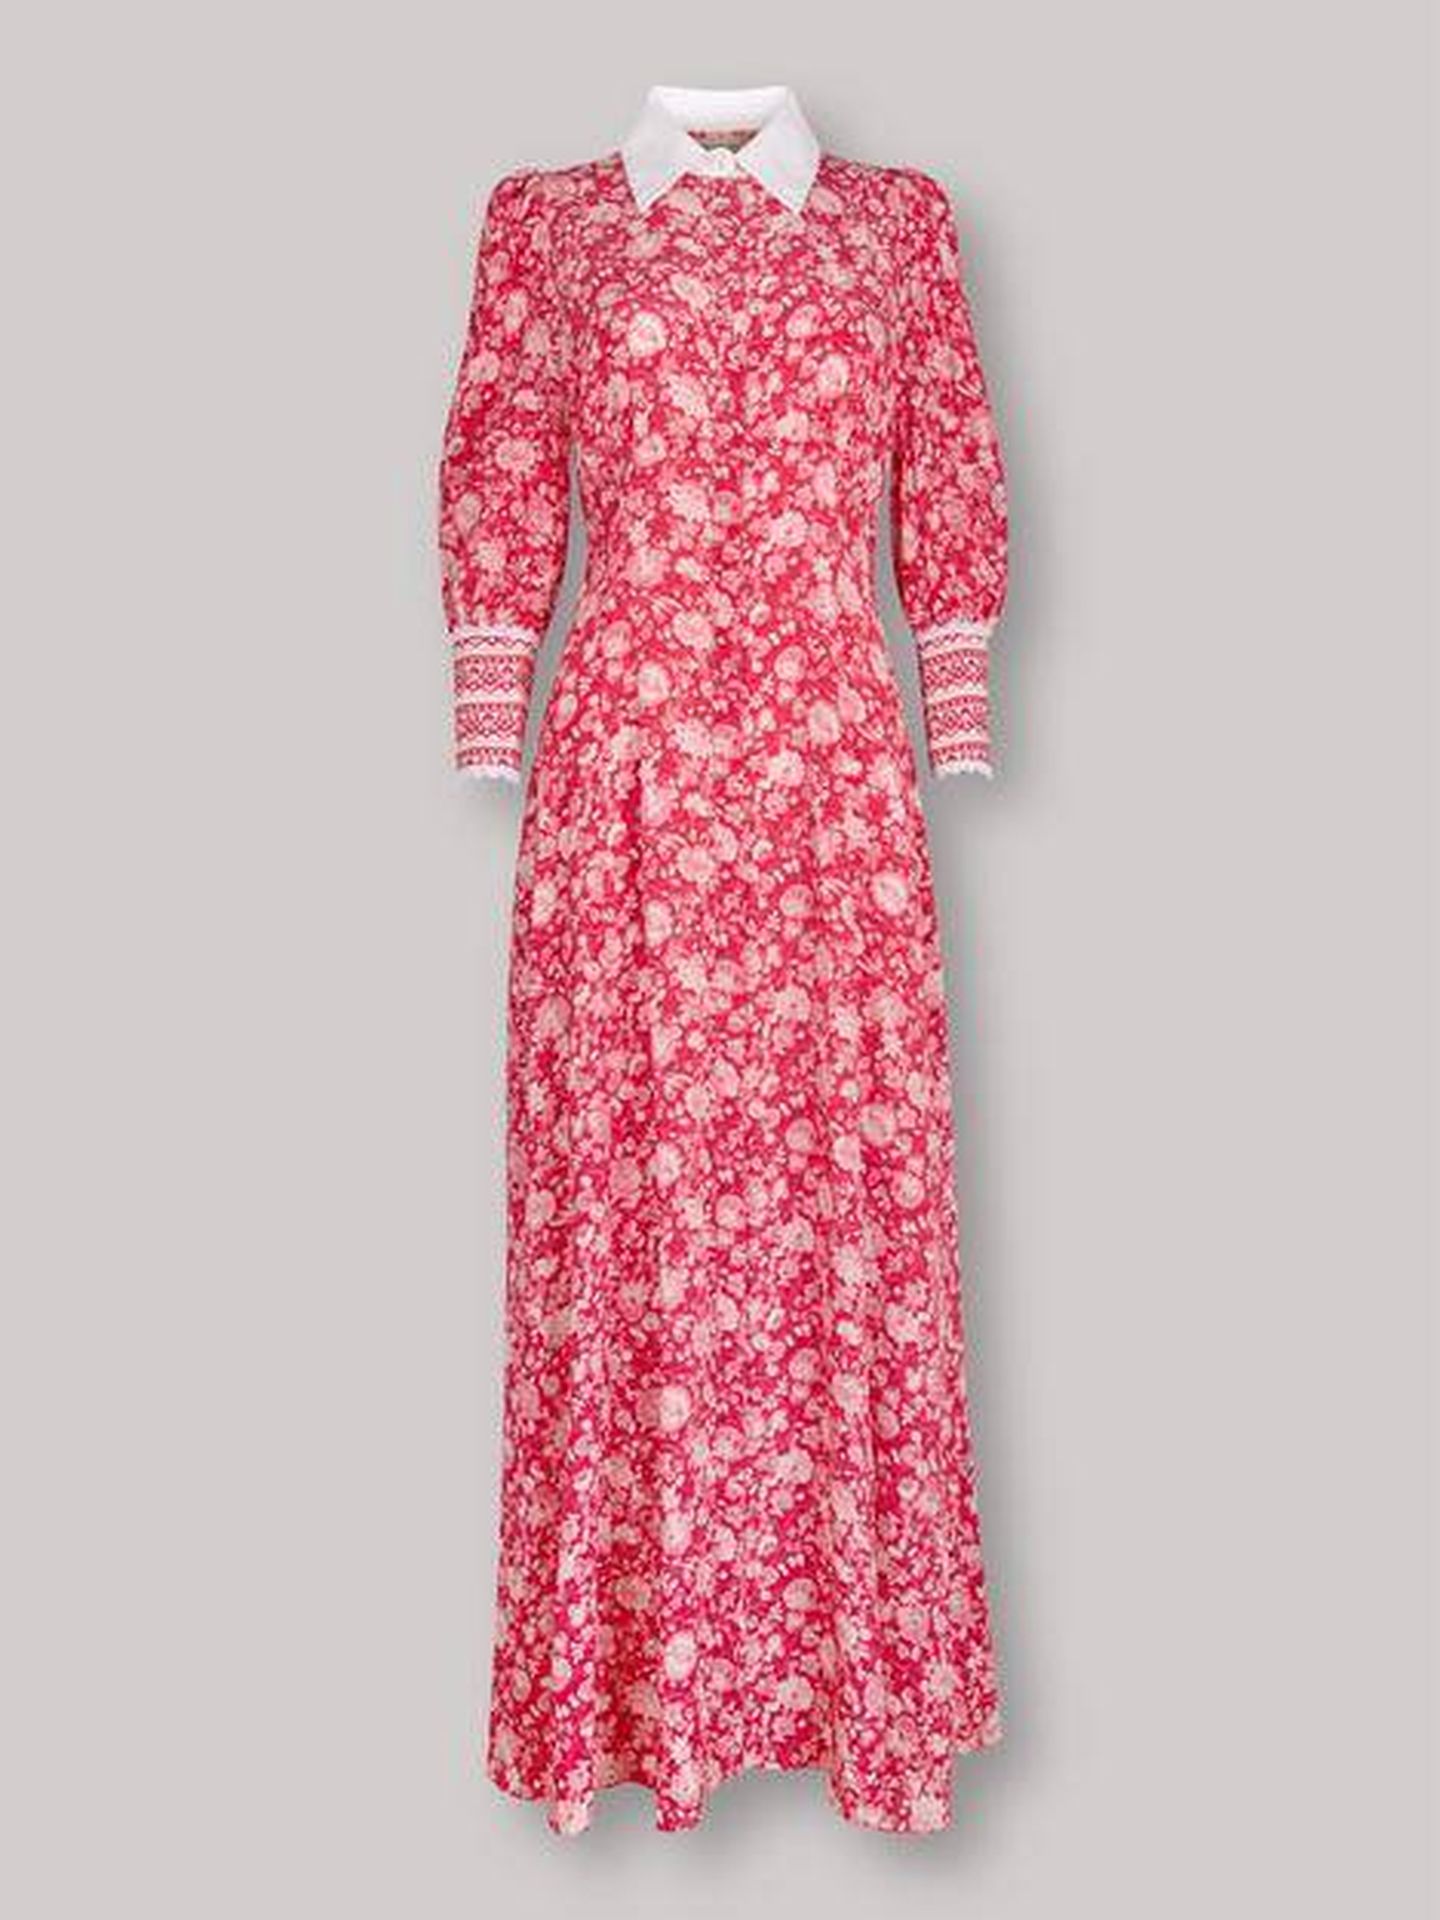 El vestido lucido este lunes por Kate Middleton. (Beulah)